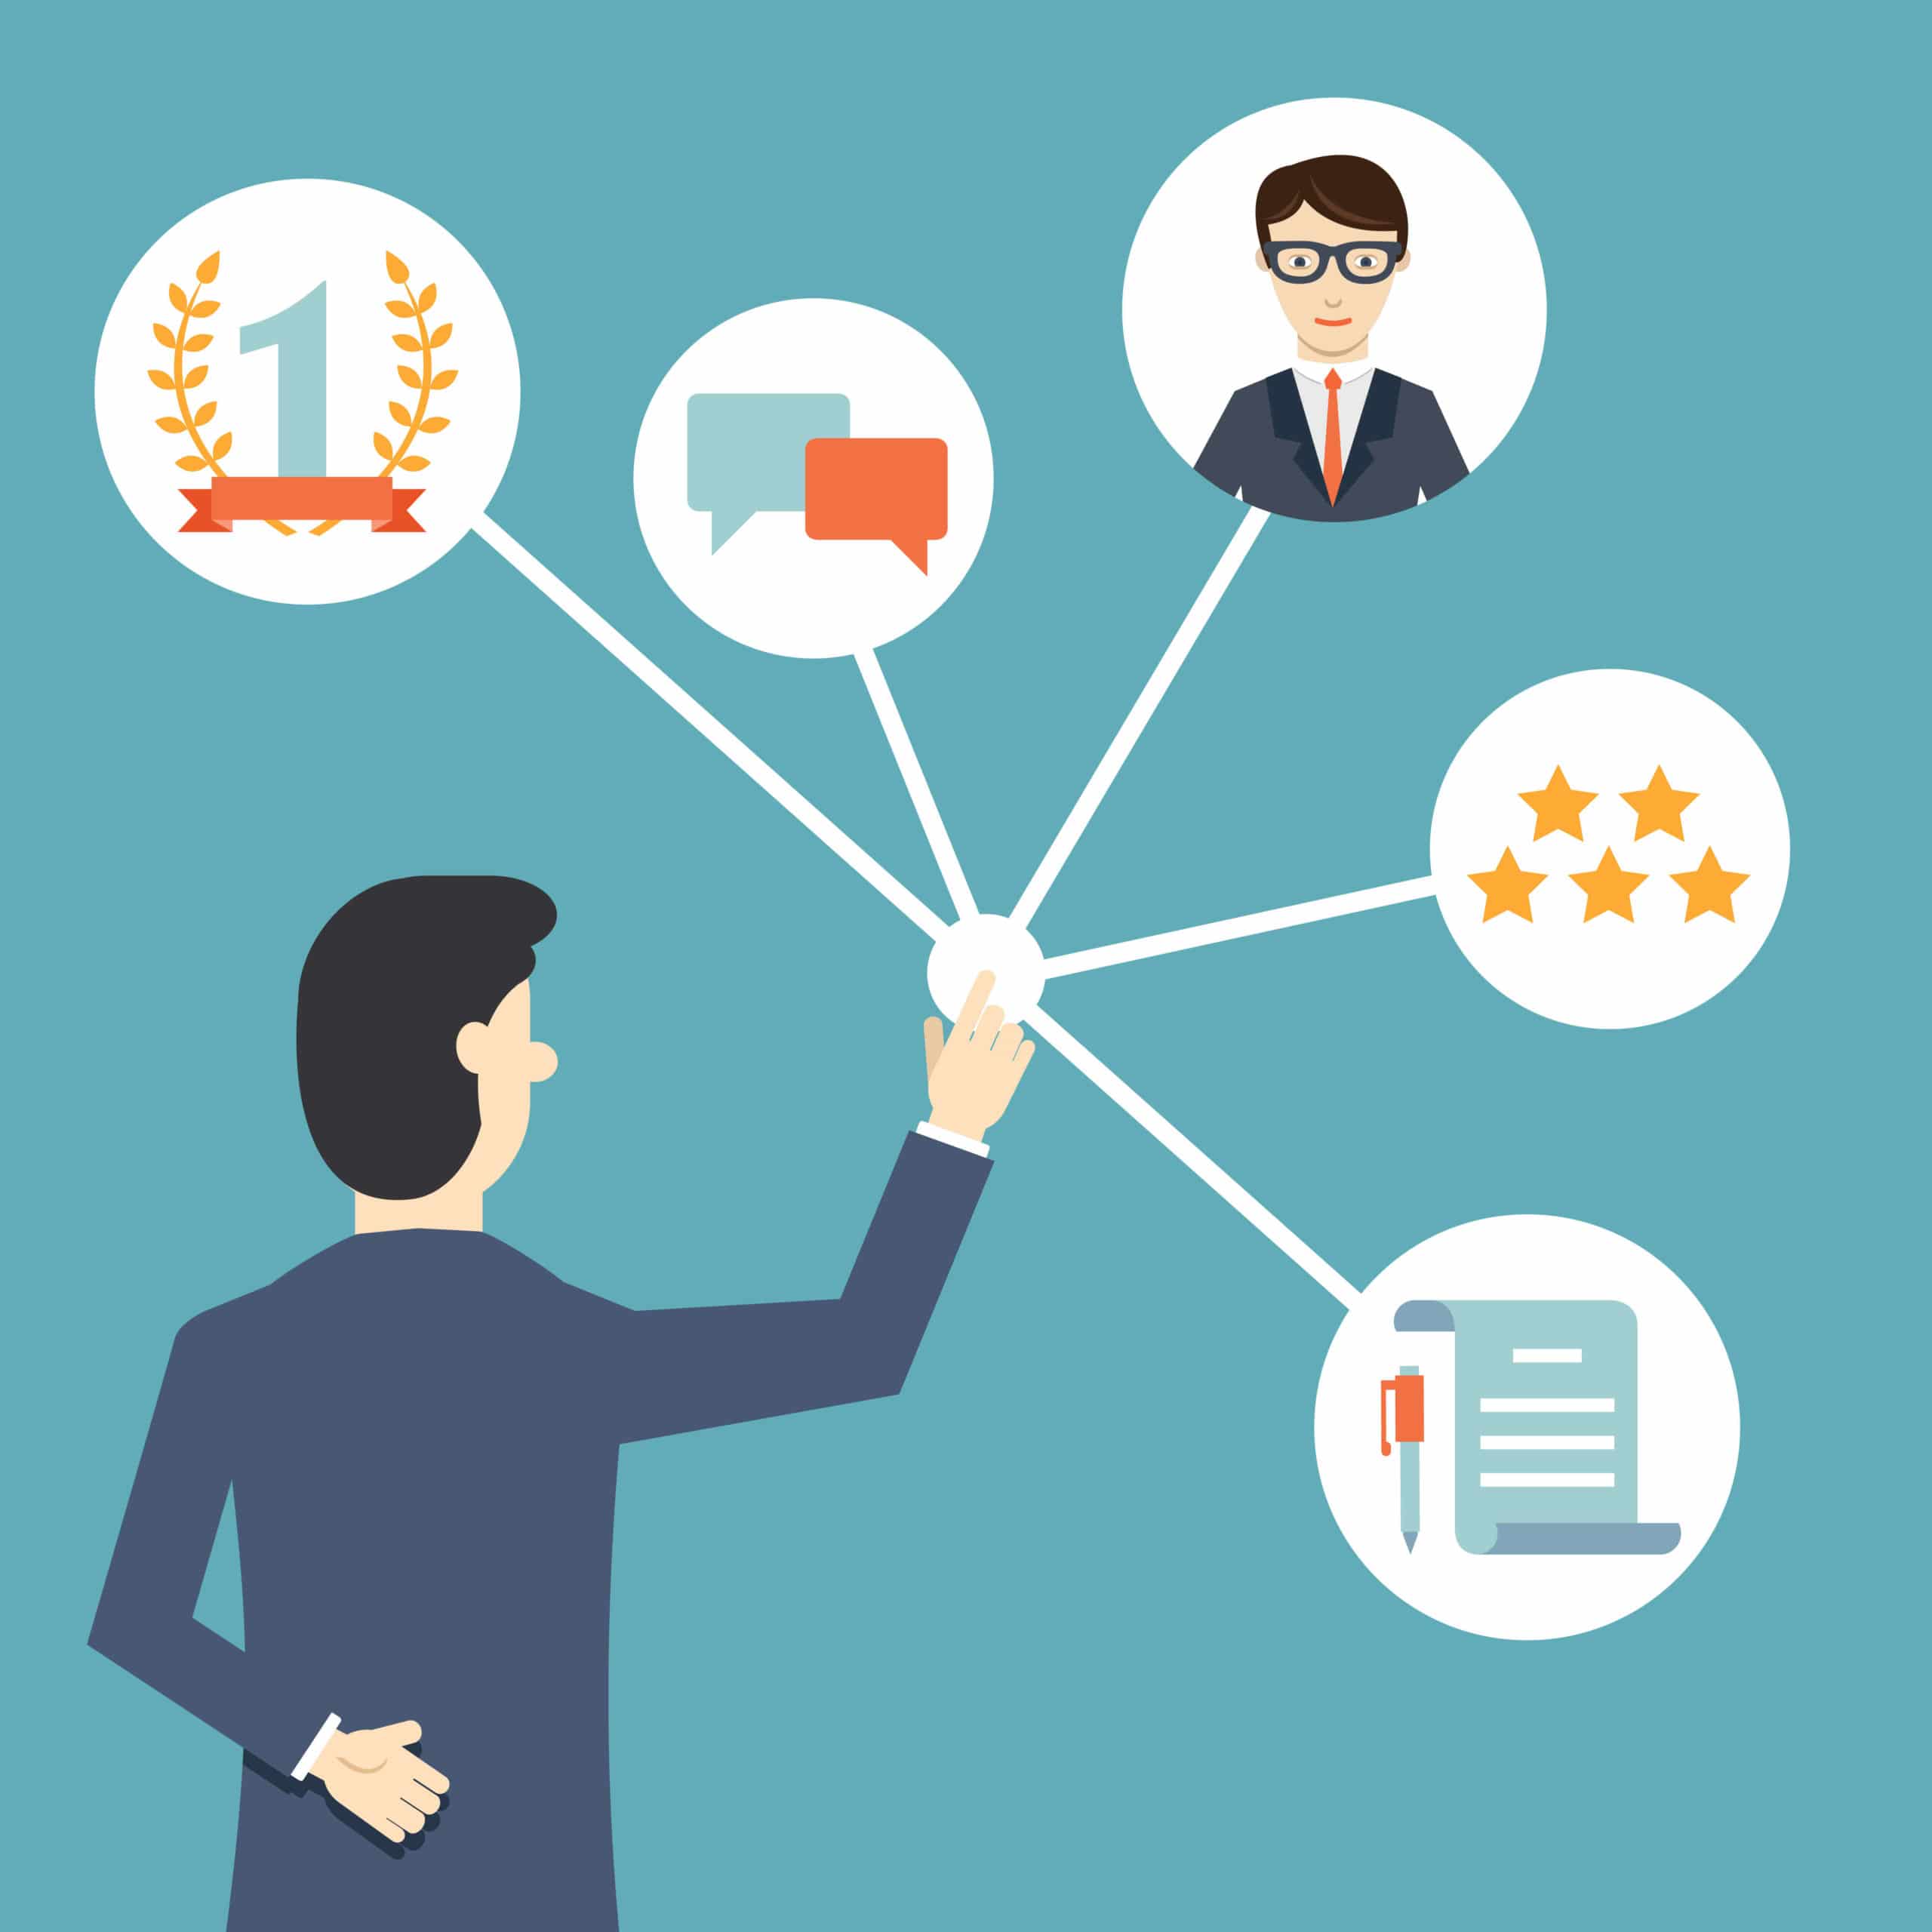 Ilustração representando a importância da gestão de relacionamento com os clientes para empresas que desejam bons resultados